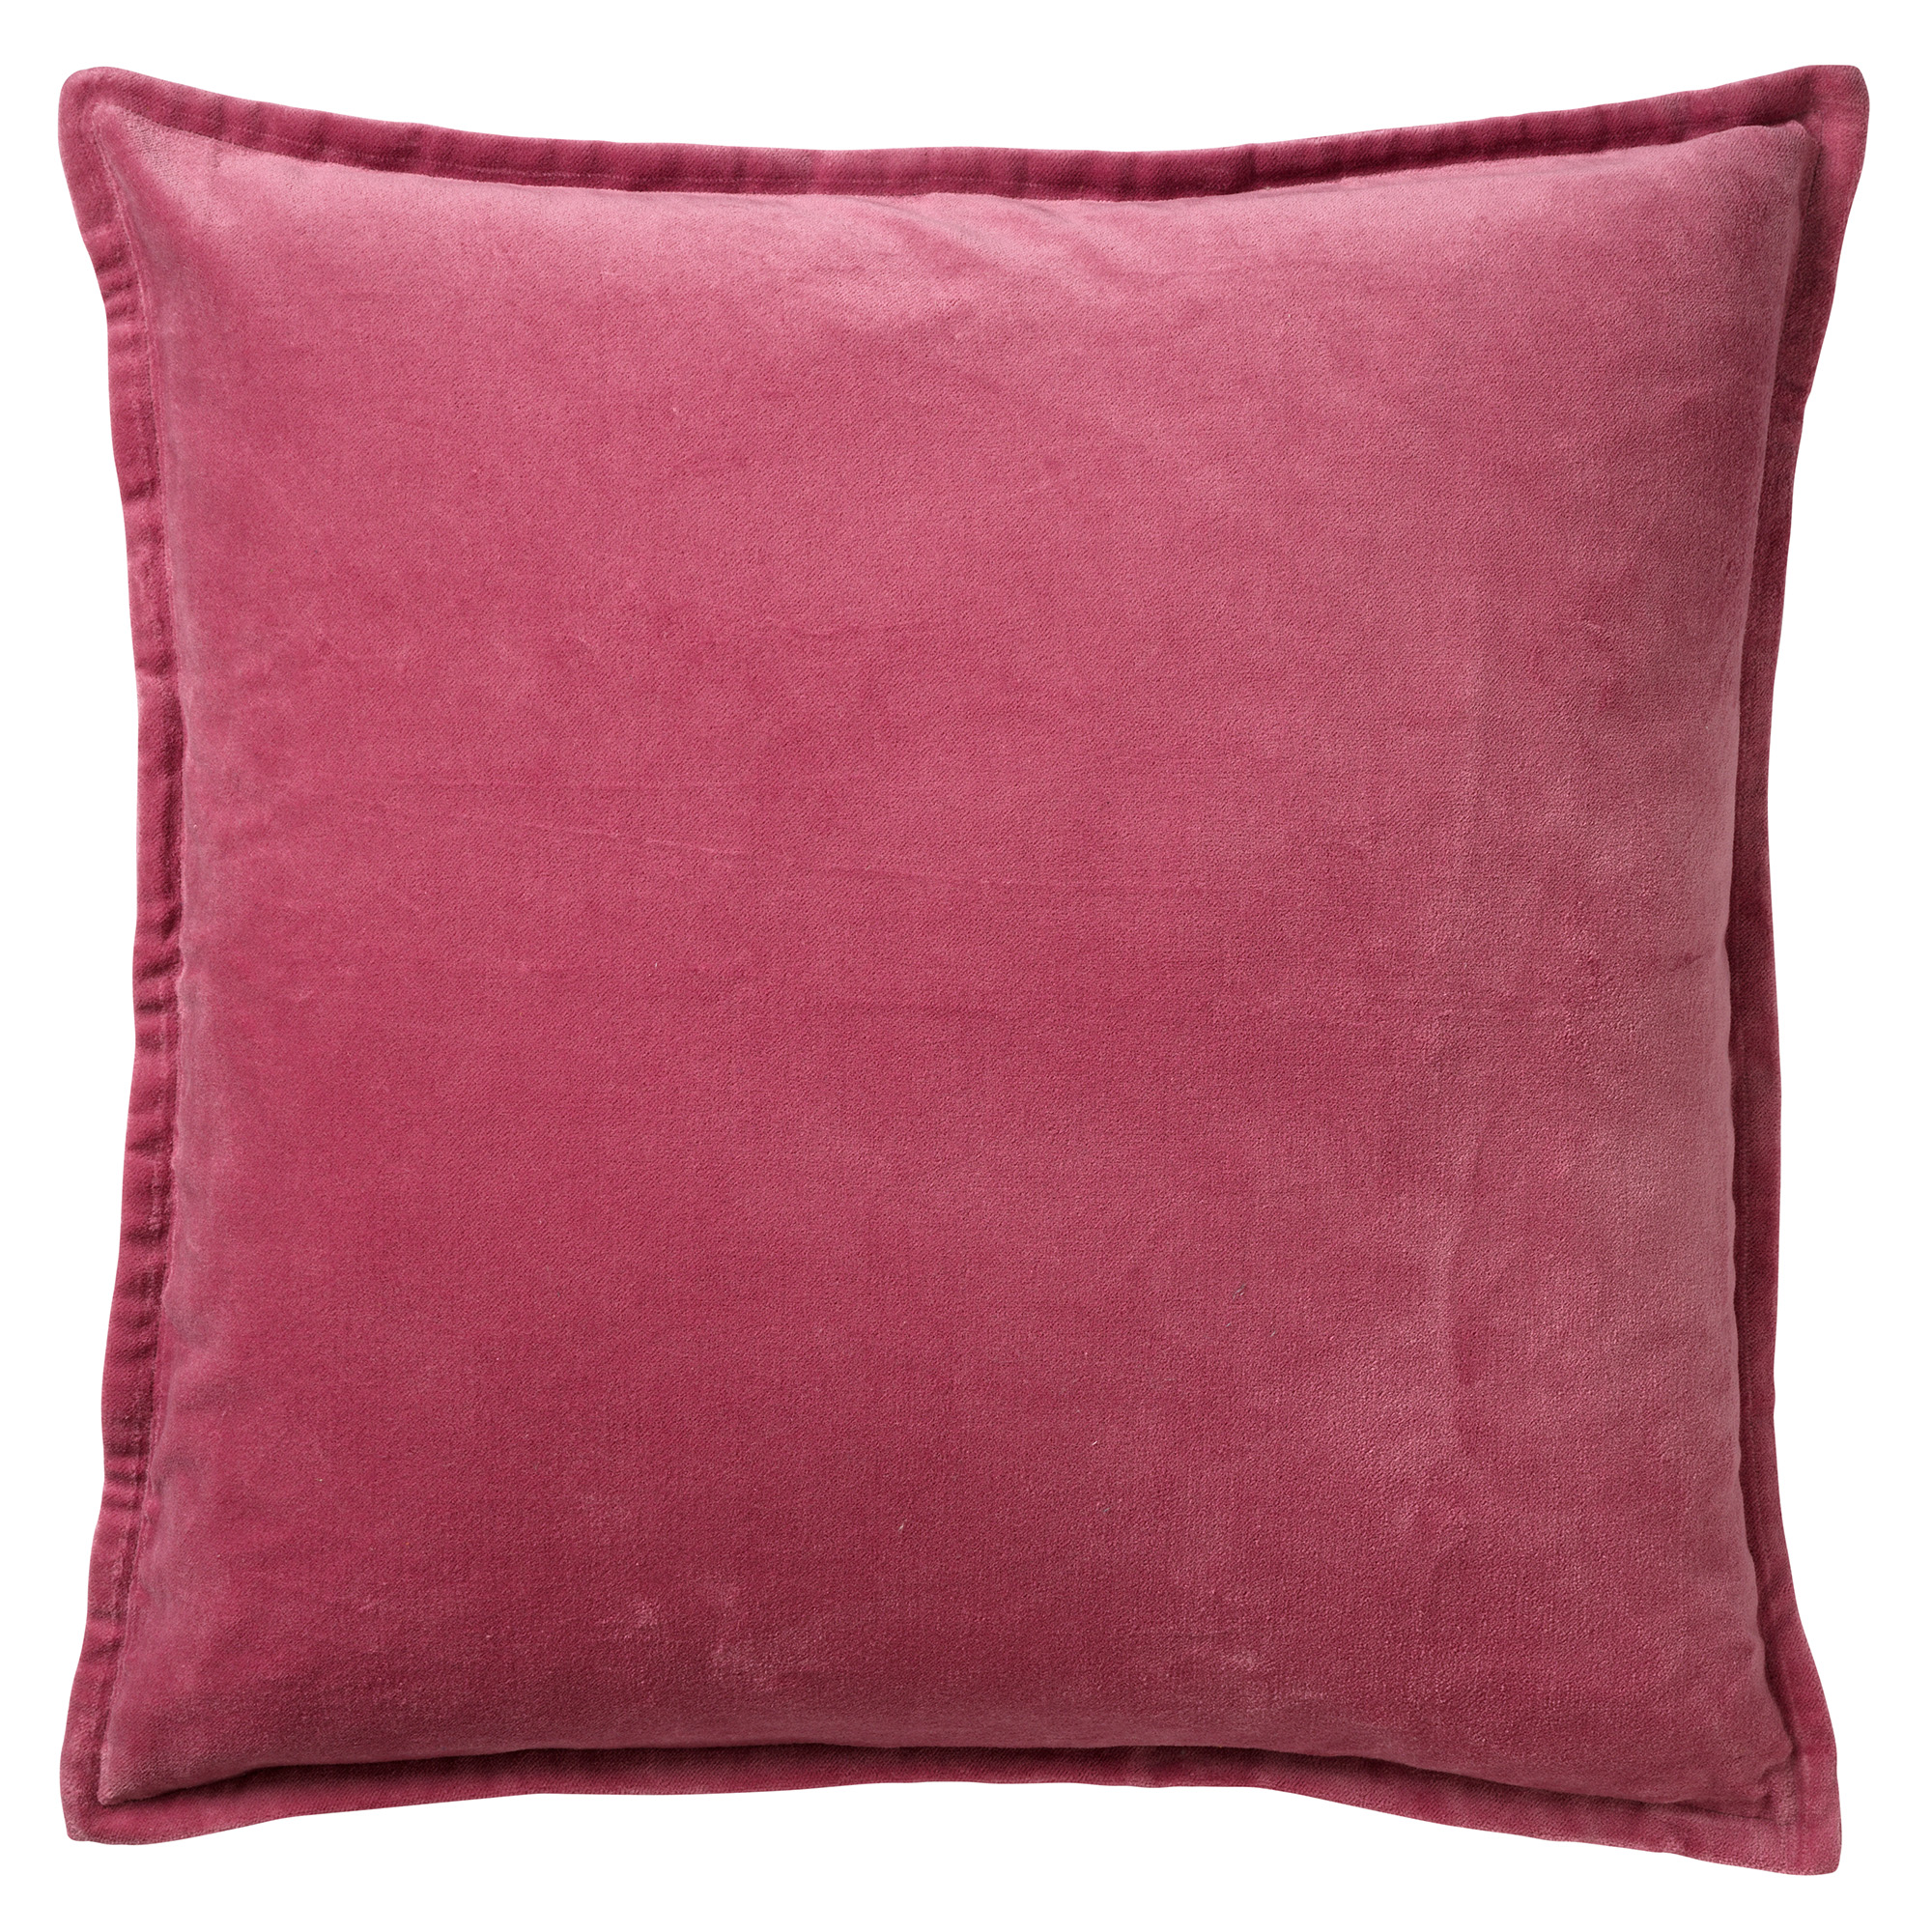 CAITH - Kussenhoes 50x50 cm - 100% katoen velvet - lekker zacht - Heather Rose - roze